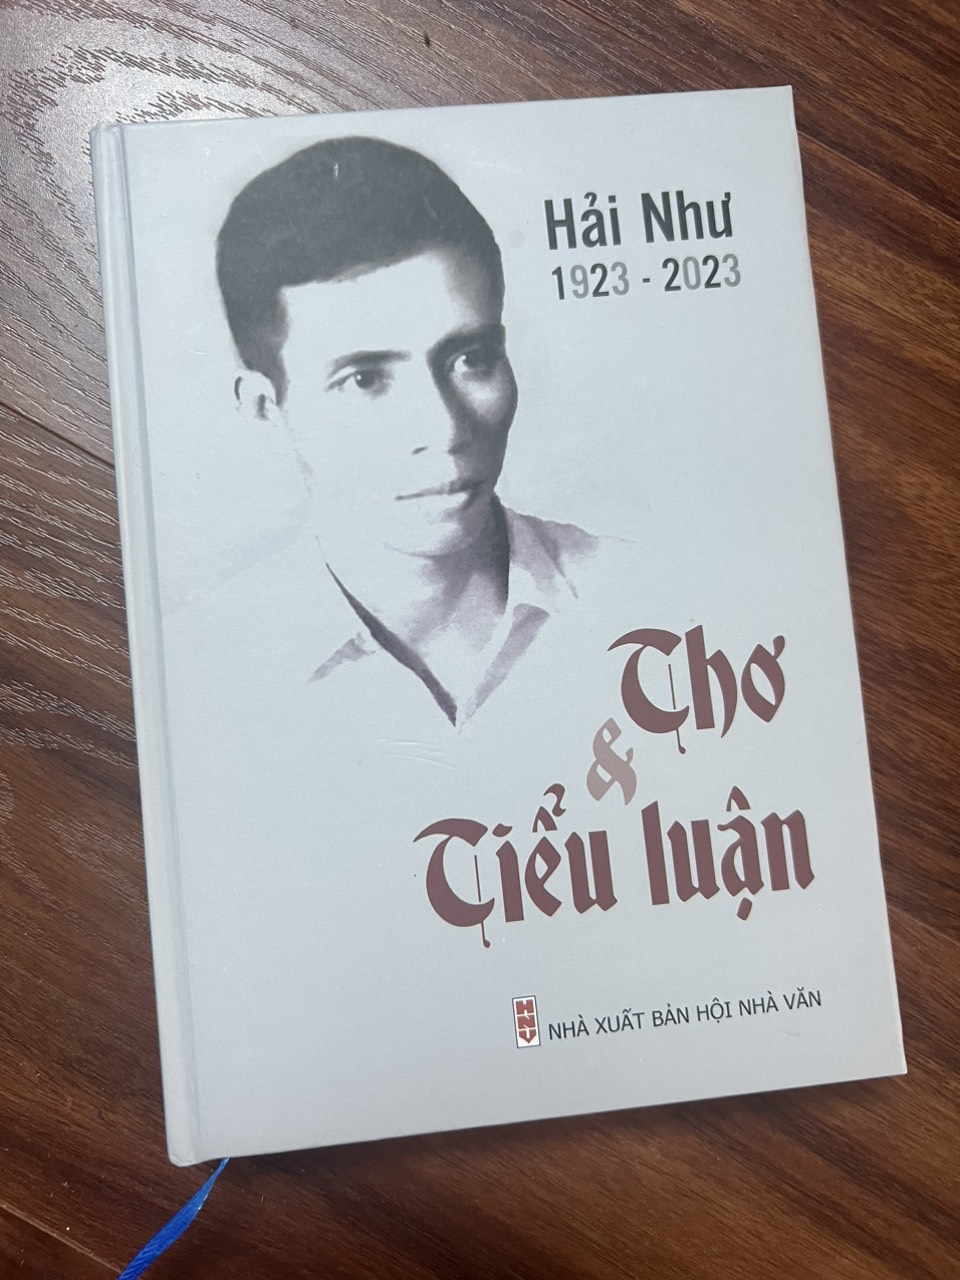 Ấn phẩm tưởng nhớ cố nhà thơ Hải Như (1923-2023). Ảnh: Hội Nhà văn TPHCM